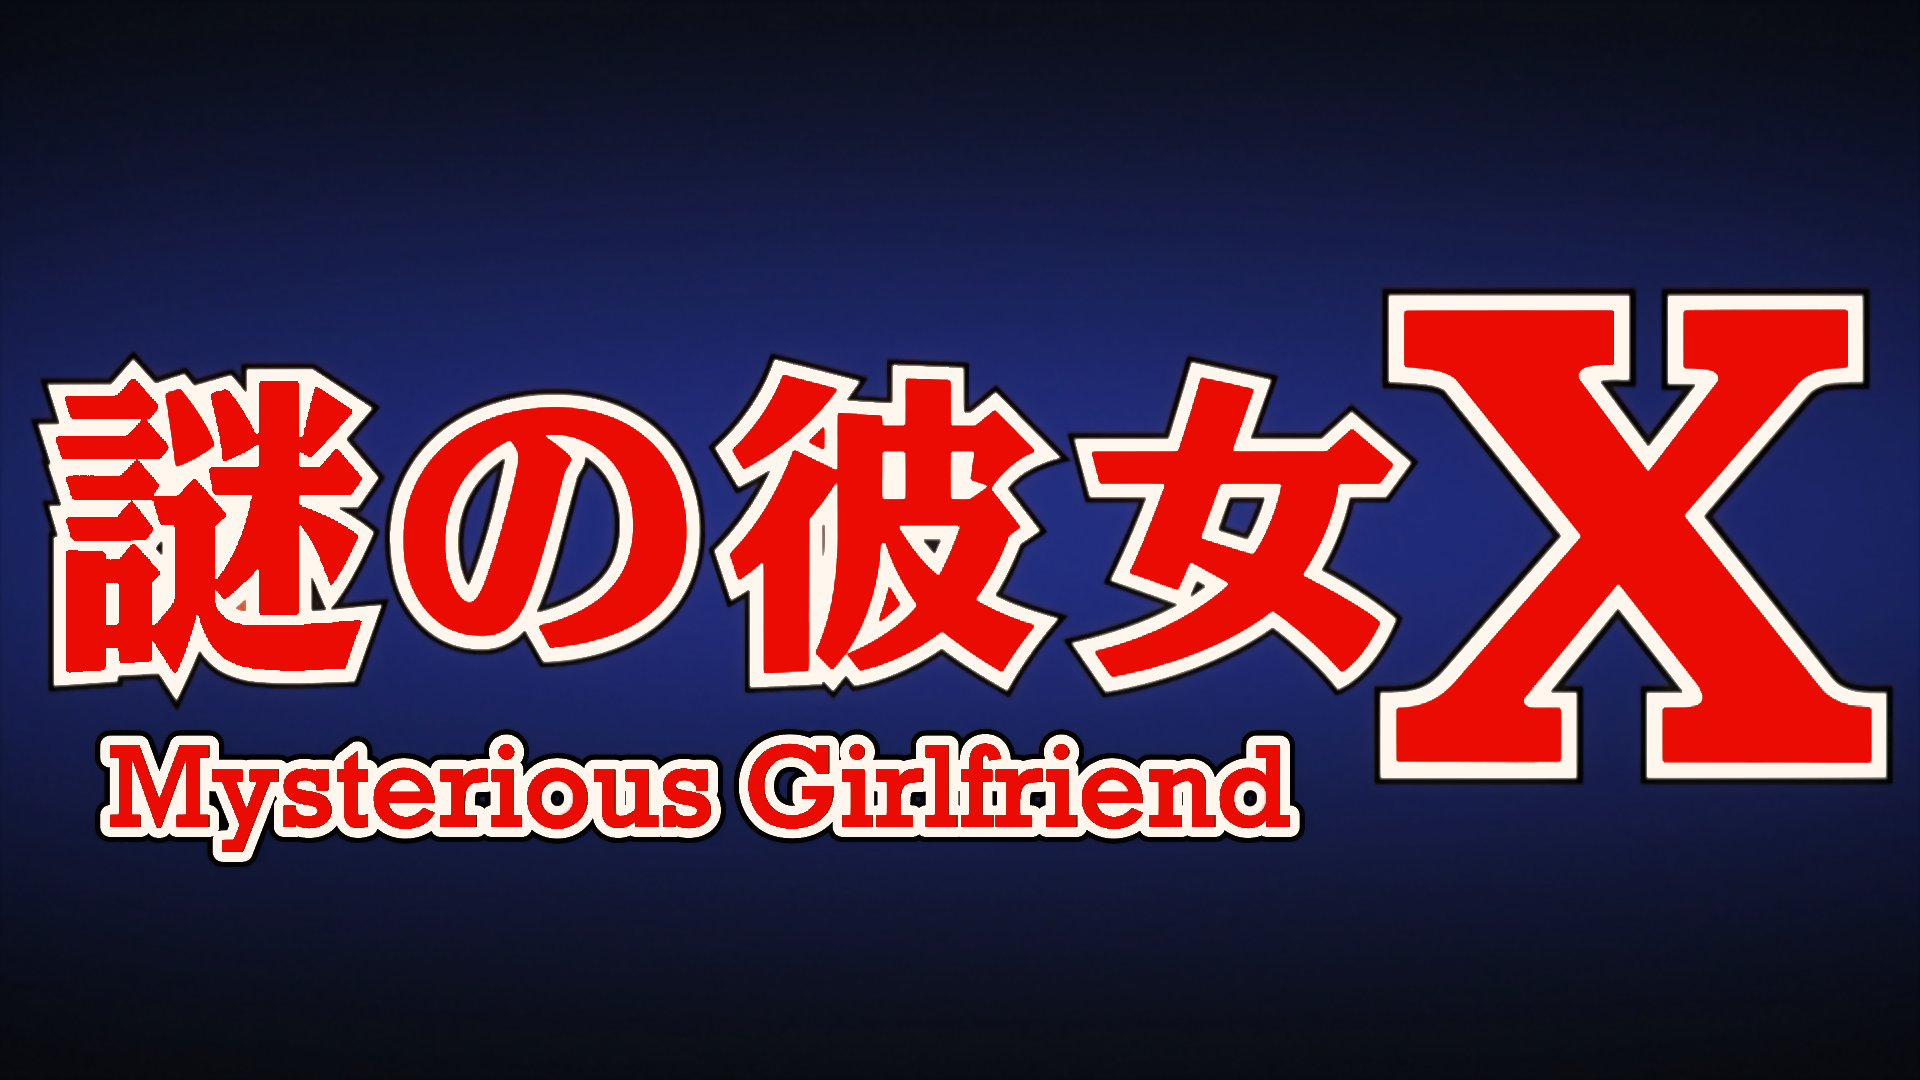 Mysterious Girlfriend X Title Wallpaper